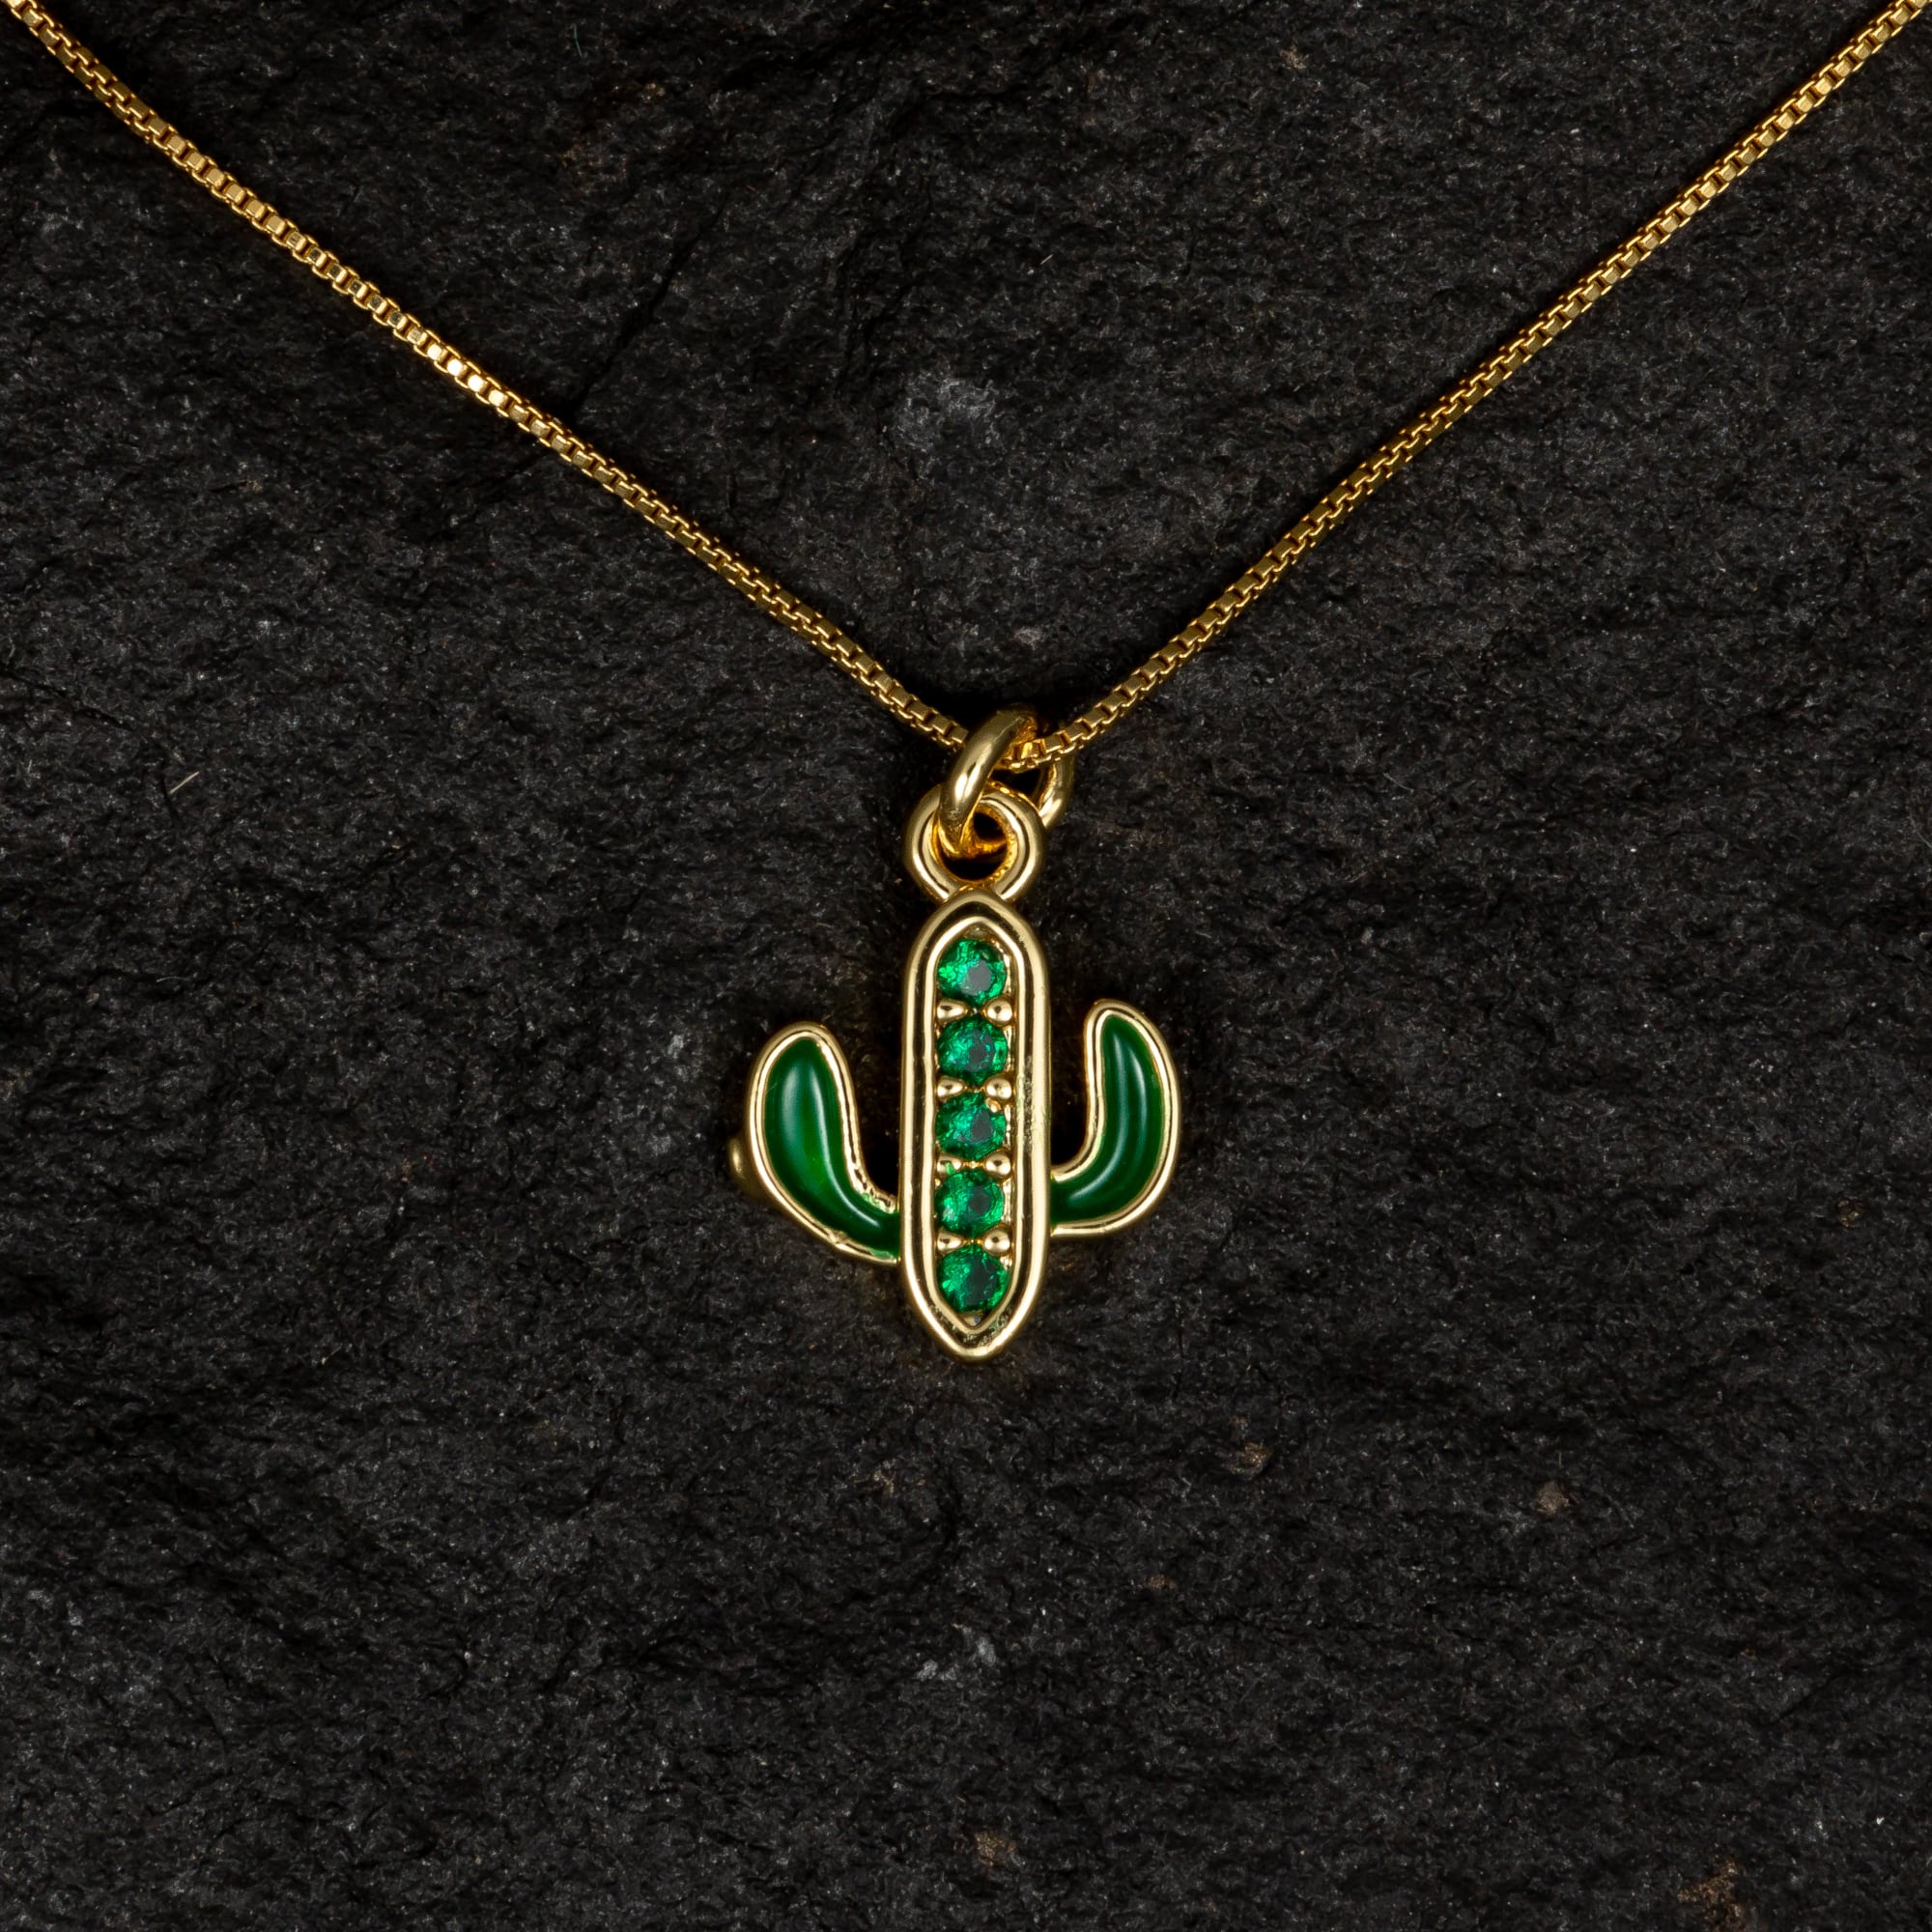 Cactus Enamel Necklace with Green Gemstones - Necklaces